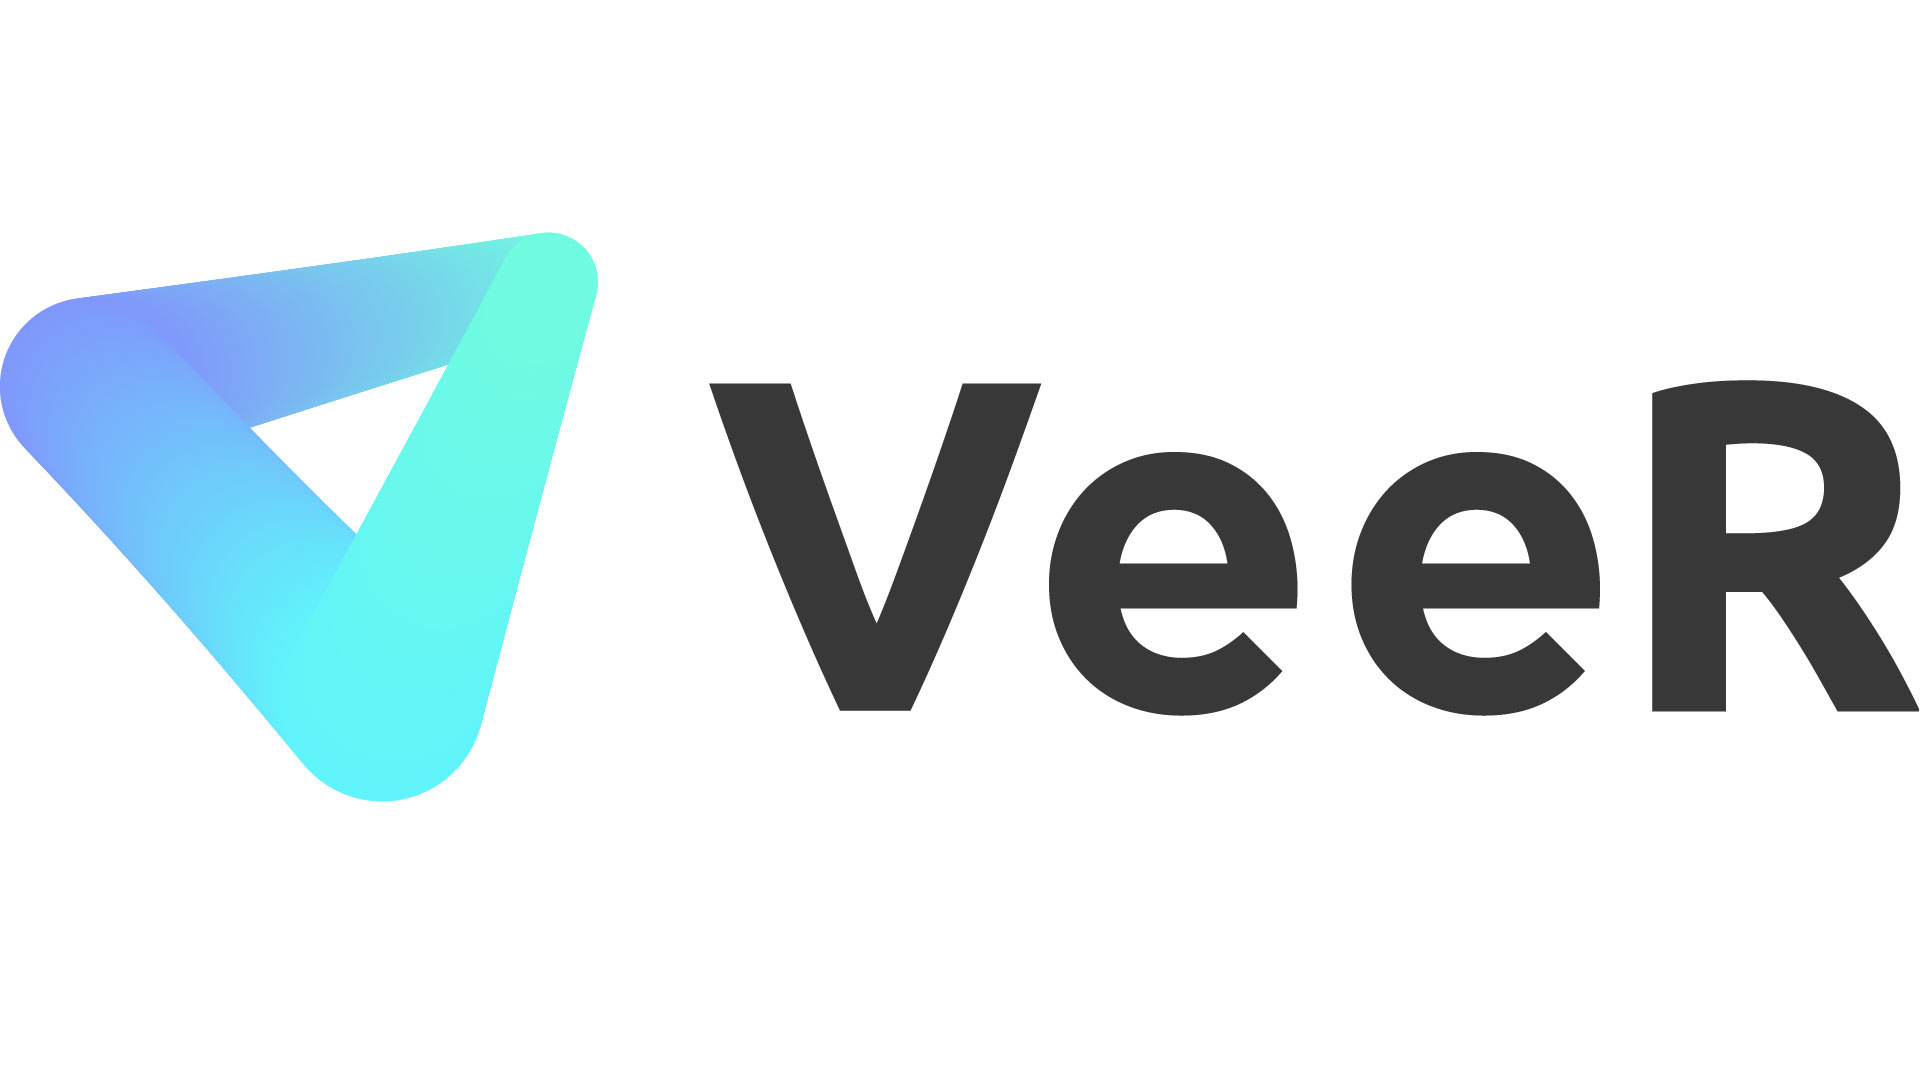 Ayden Ye shows his vision for popular VR content platform VeeR